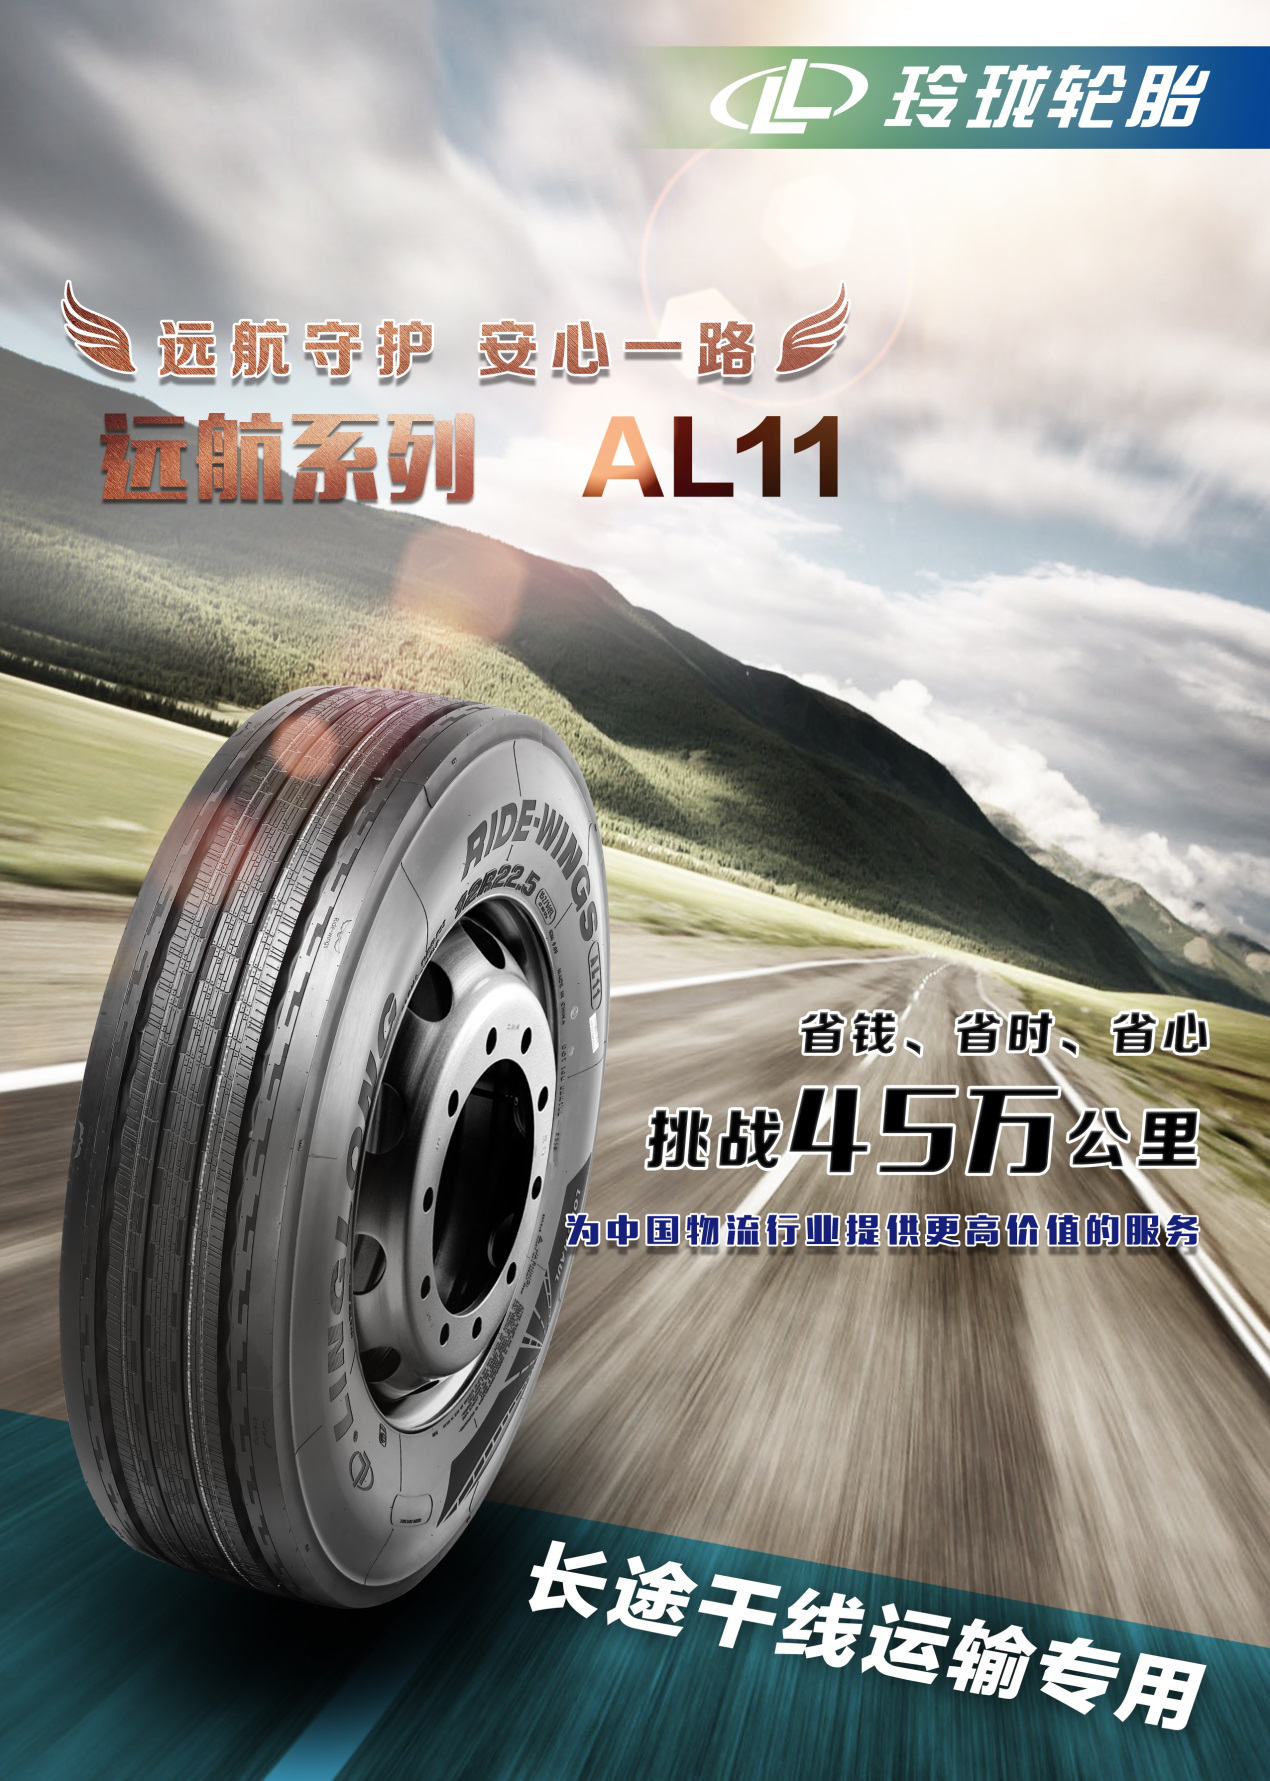 玲珑轮胎远航系列 荣获第四届中国卡车意见领袖年度创富品牌